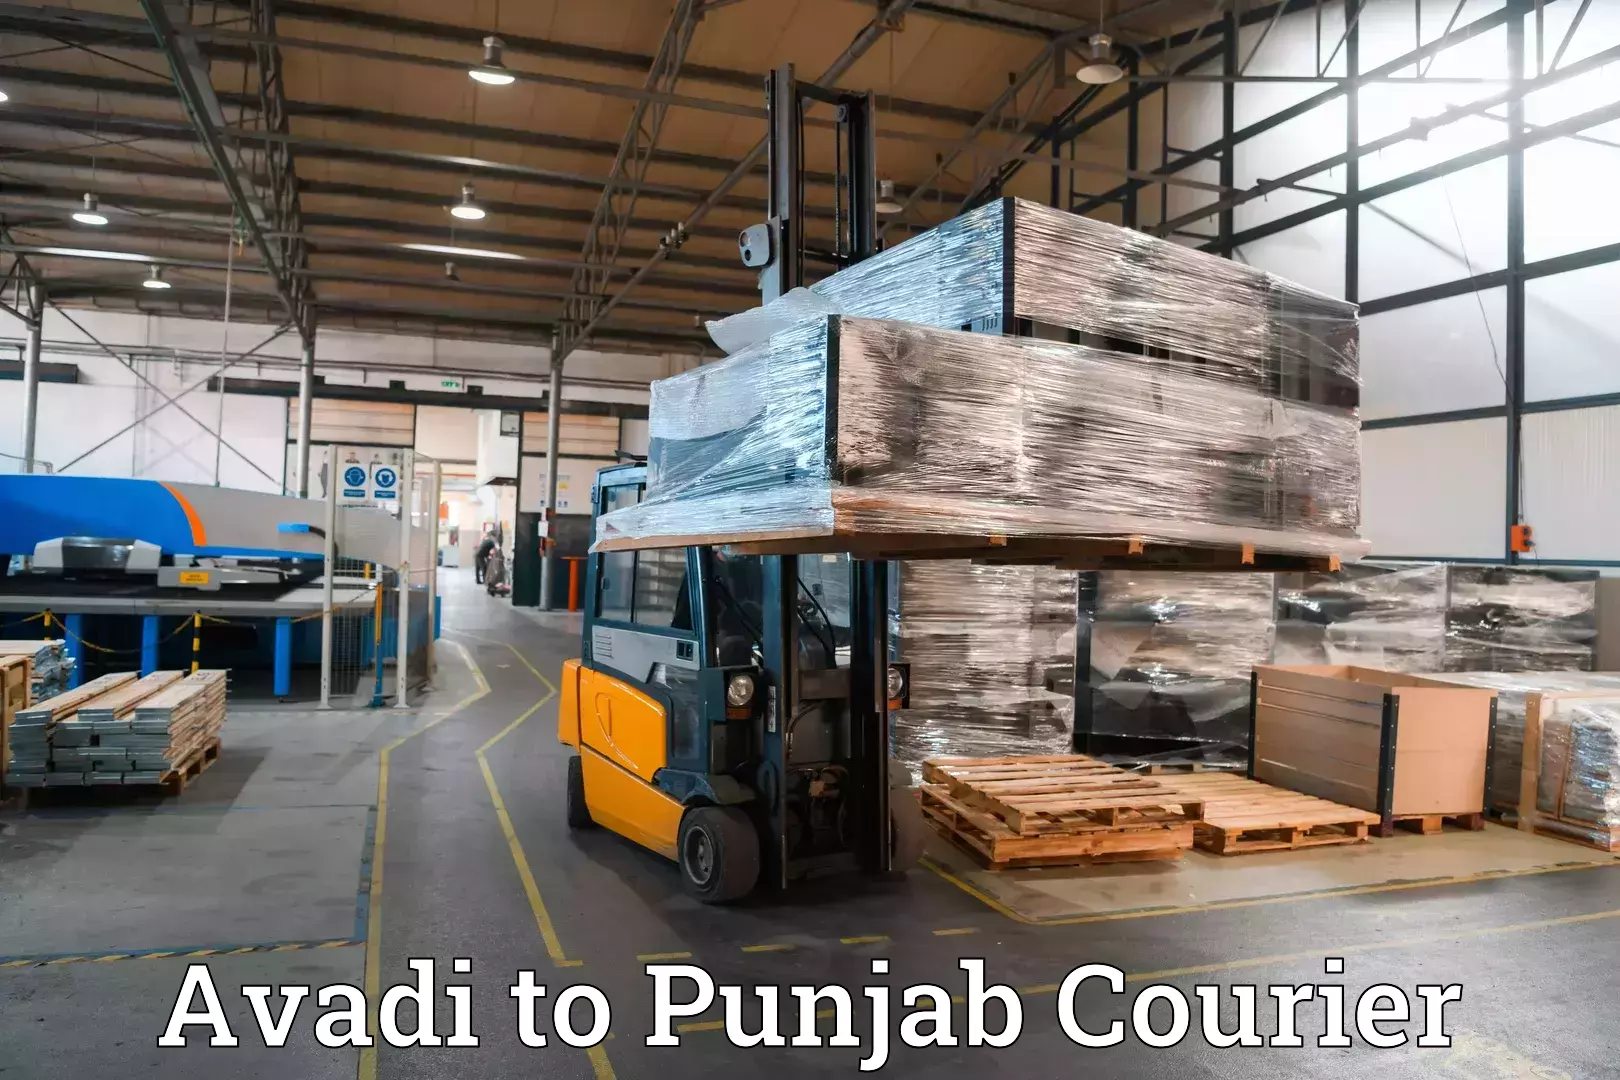 Luggage courier planning Avadi to Punjab